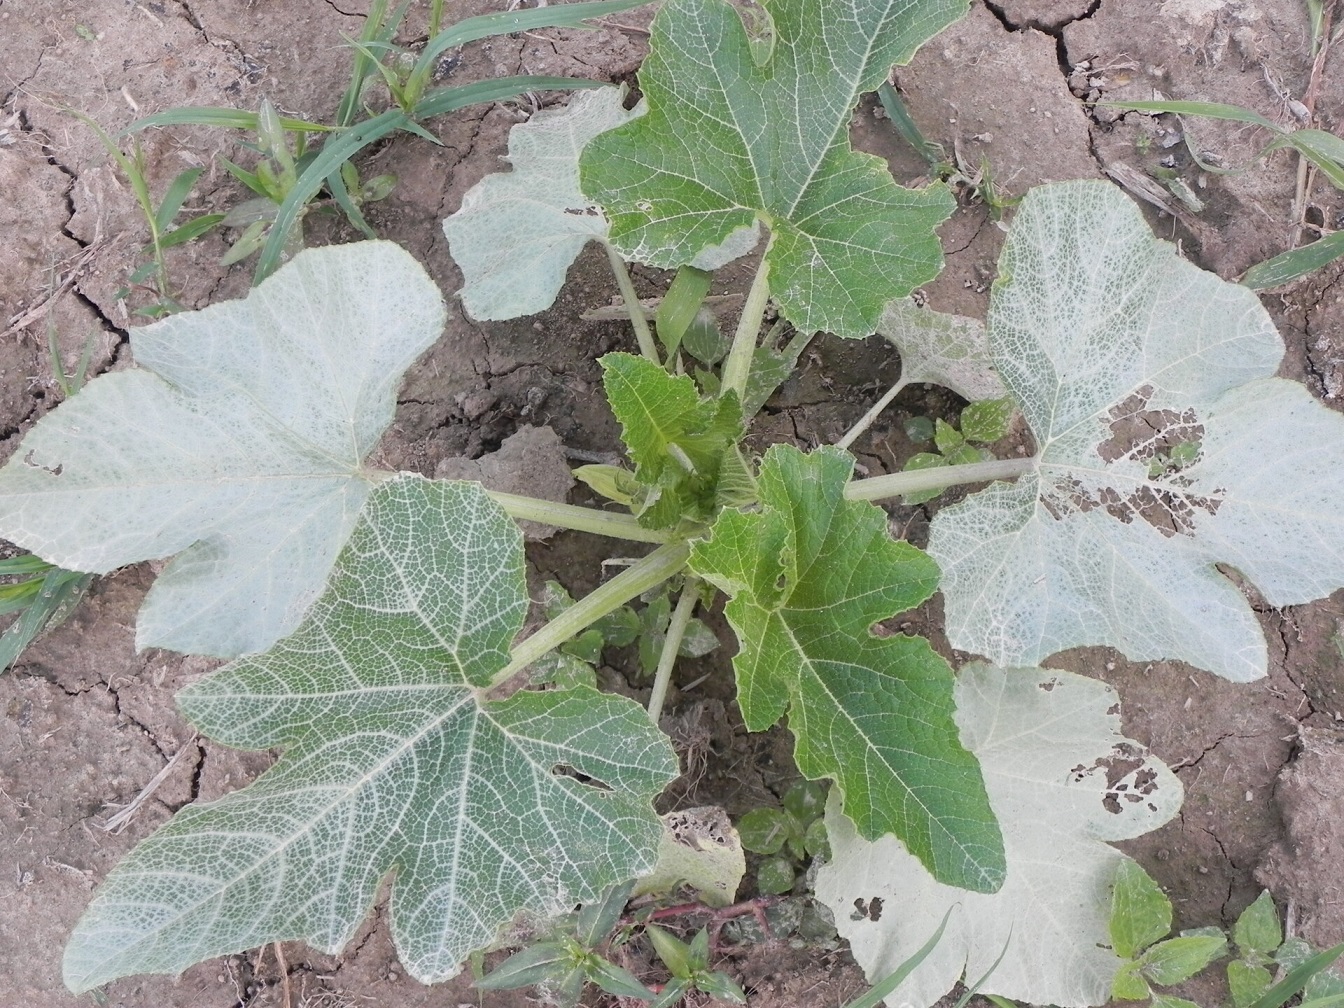 Silver leaf of zucchini.